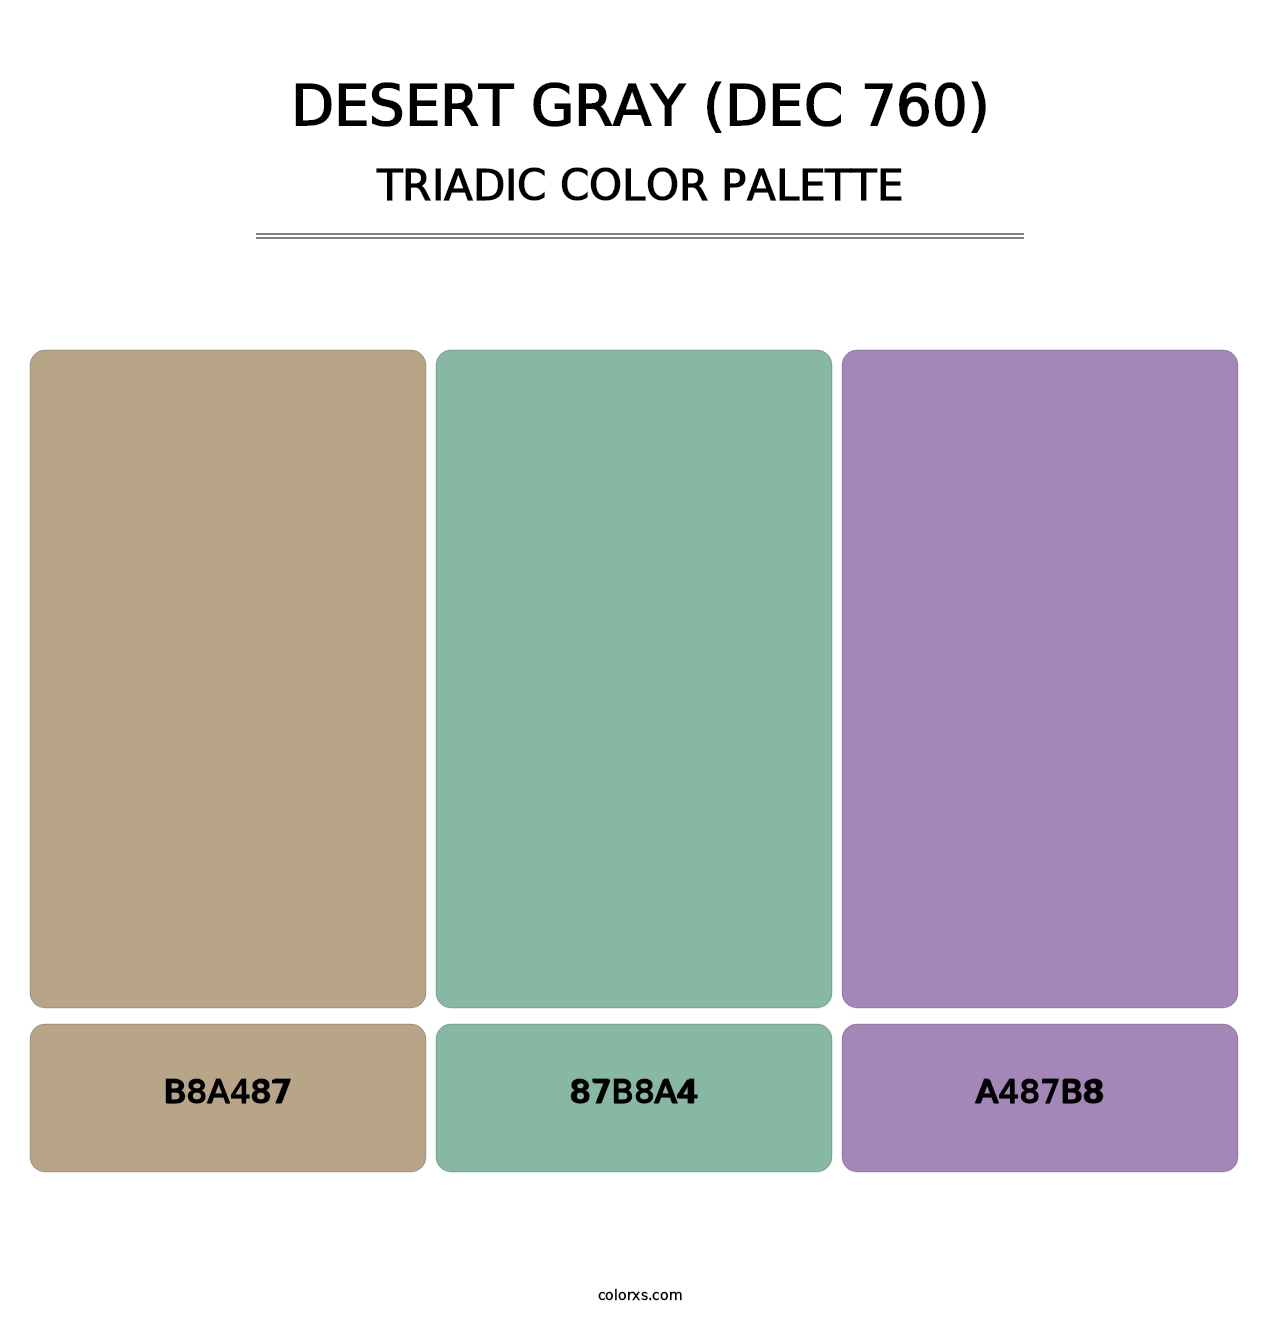 Desert Gray (DEC 760) - Triadic Color Palette